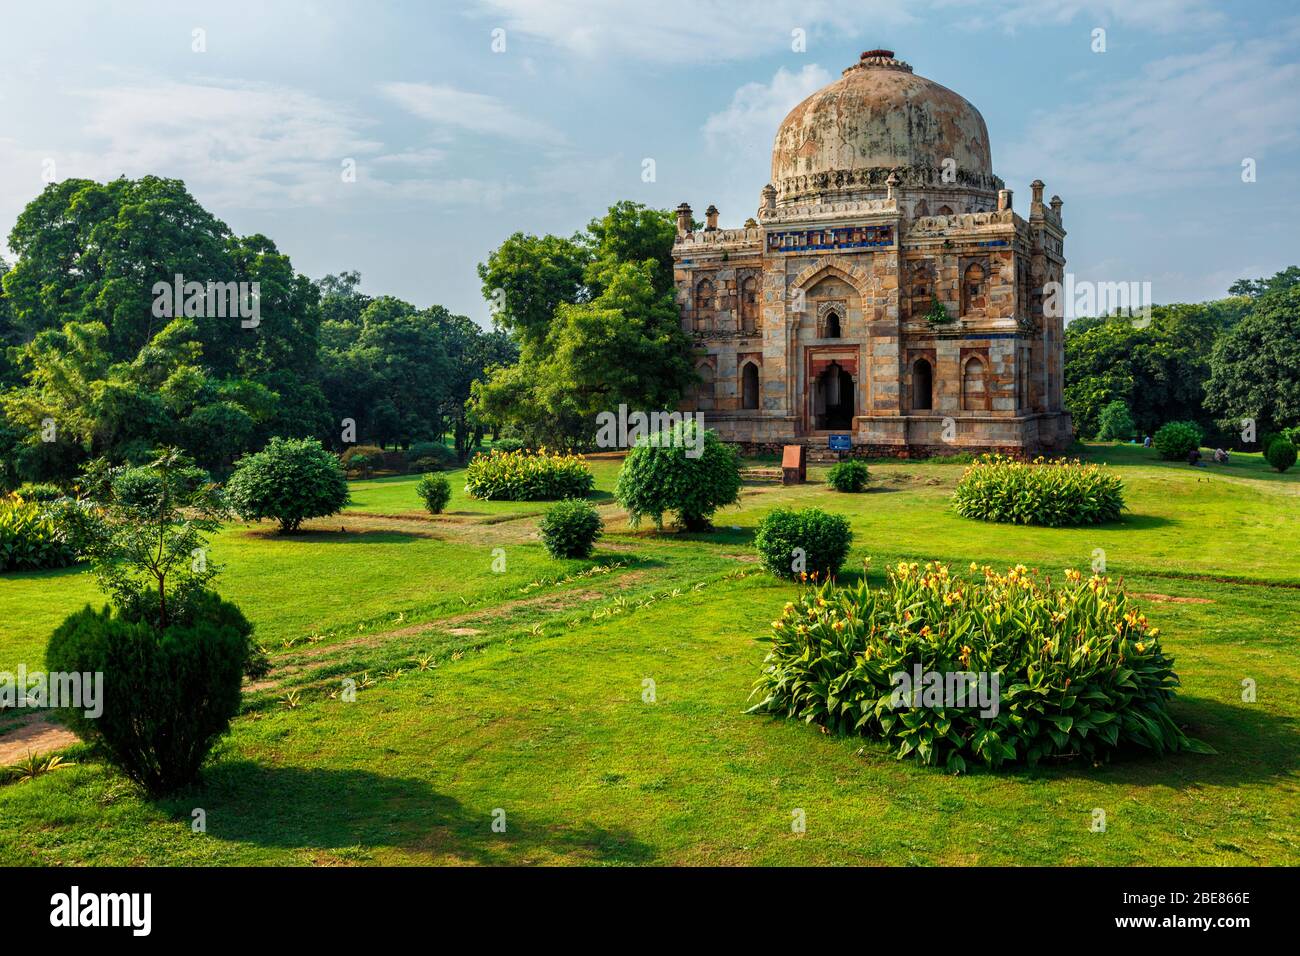 Sheesh Gumbad tomb in Lodi Gardens city park in Delhi, India Stock Photo